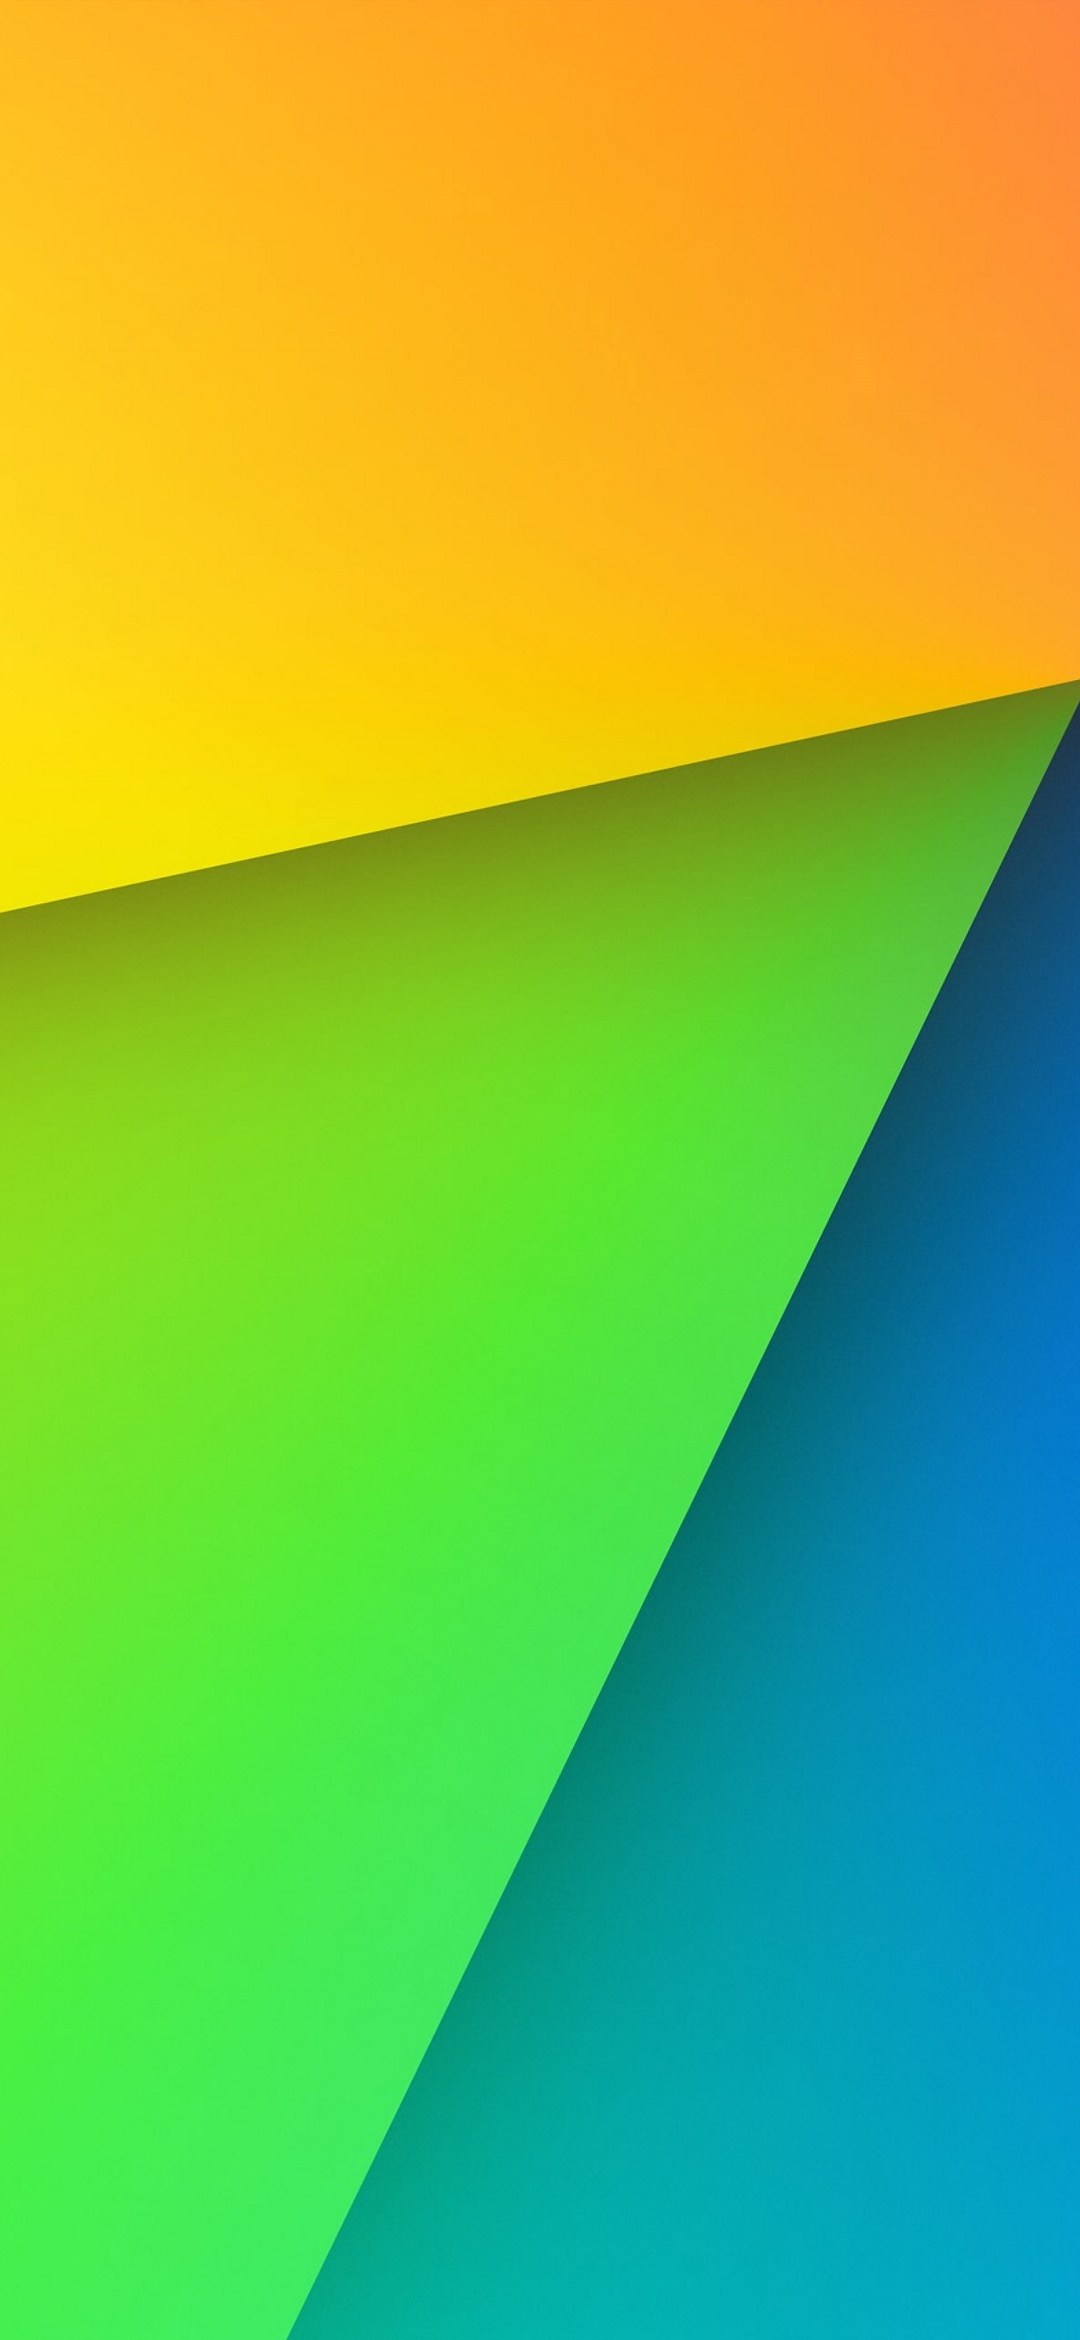 オレンジ 緑 青のグラデーション Google Pixel 5 Android スマホ壁紙 待ち受け スマラン